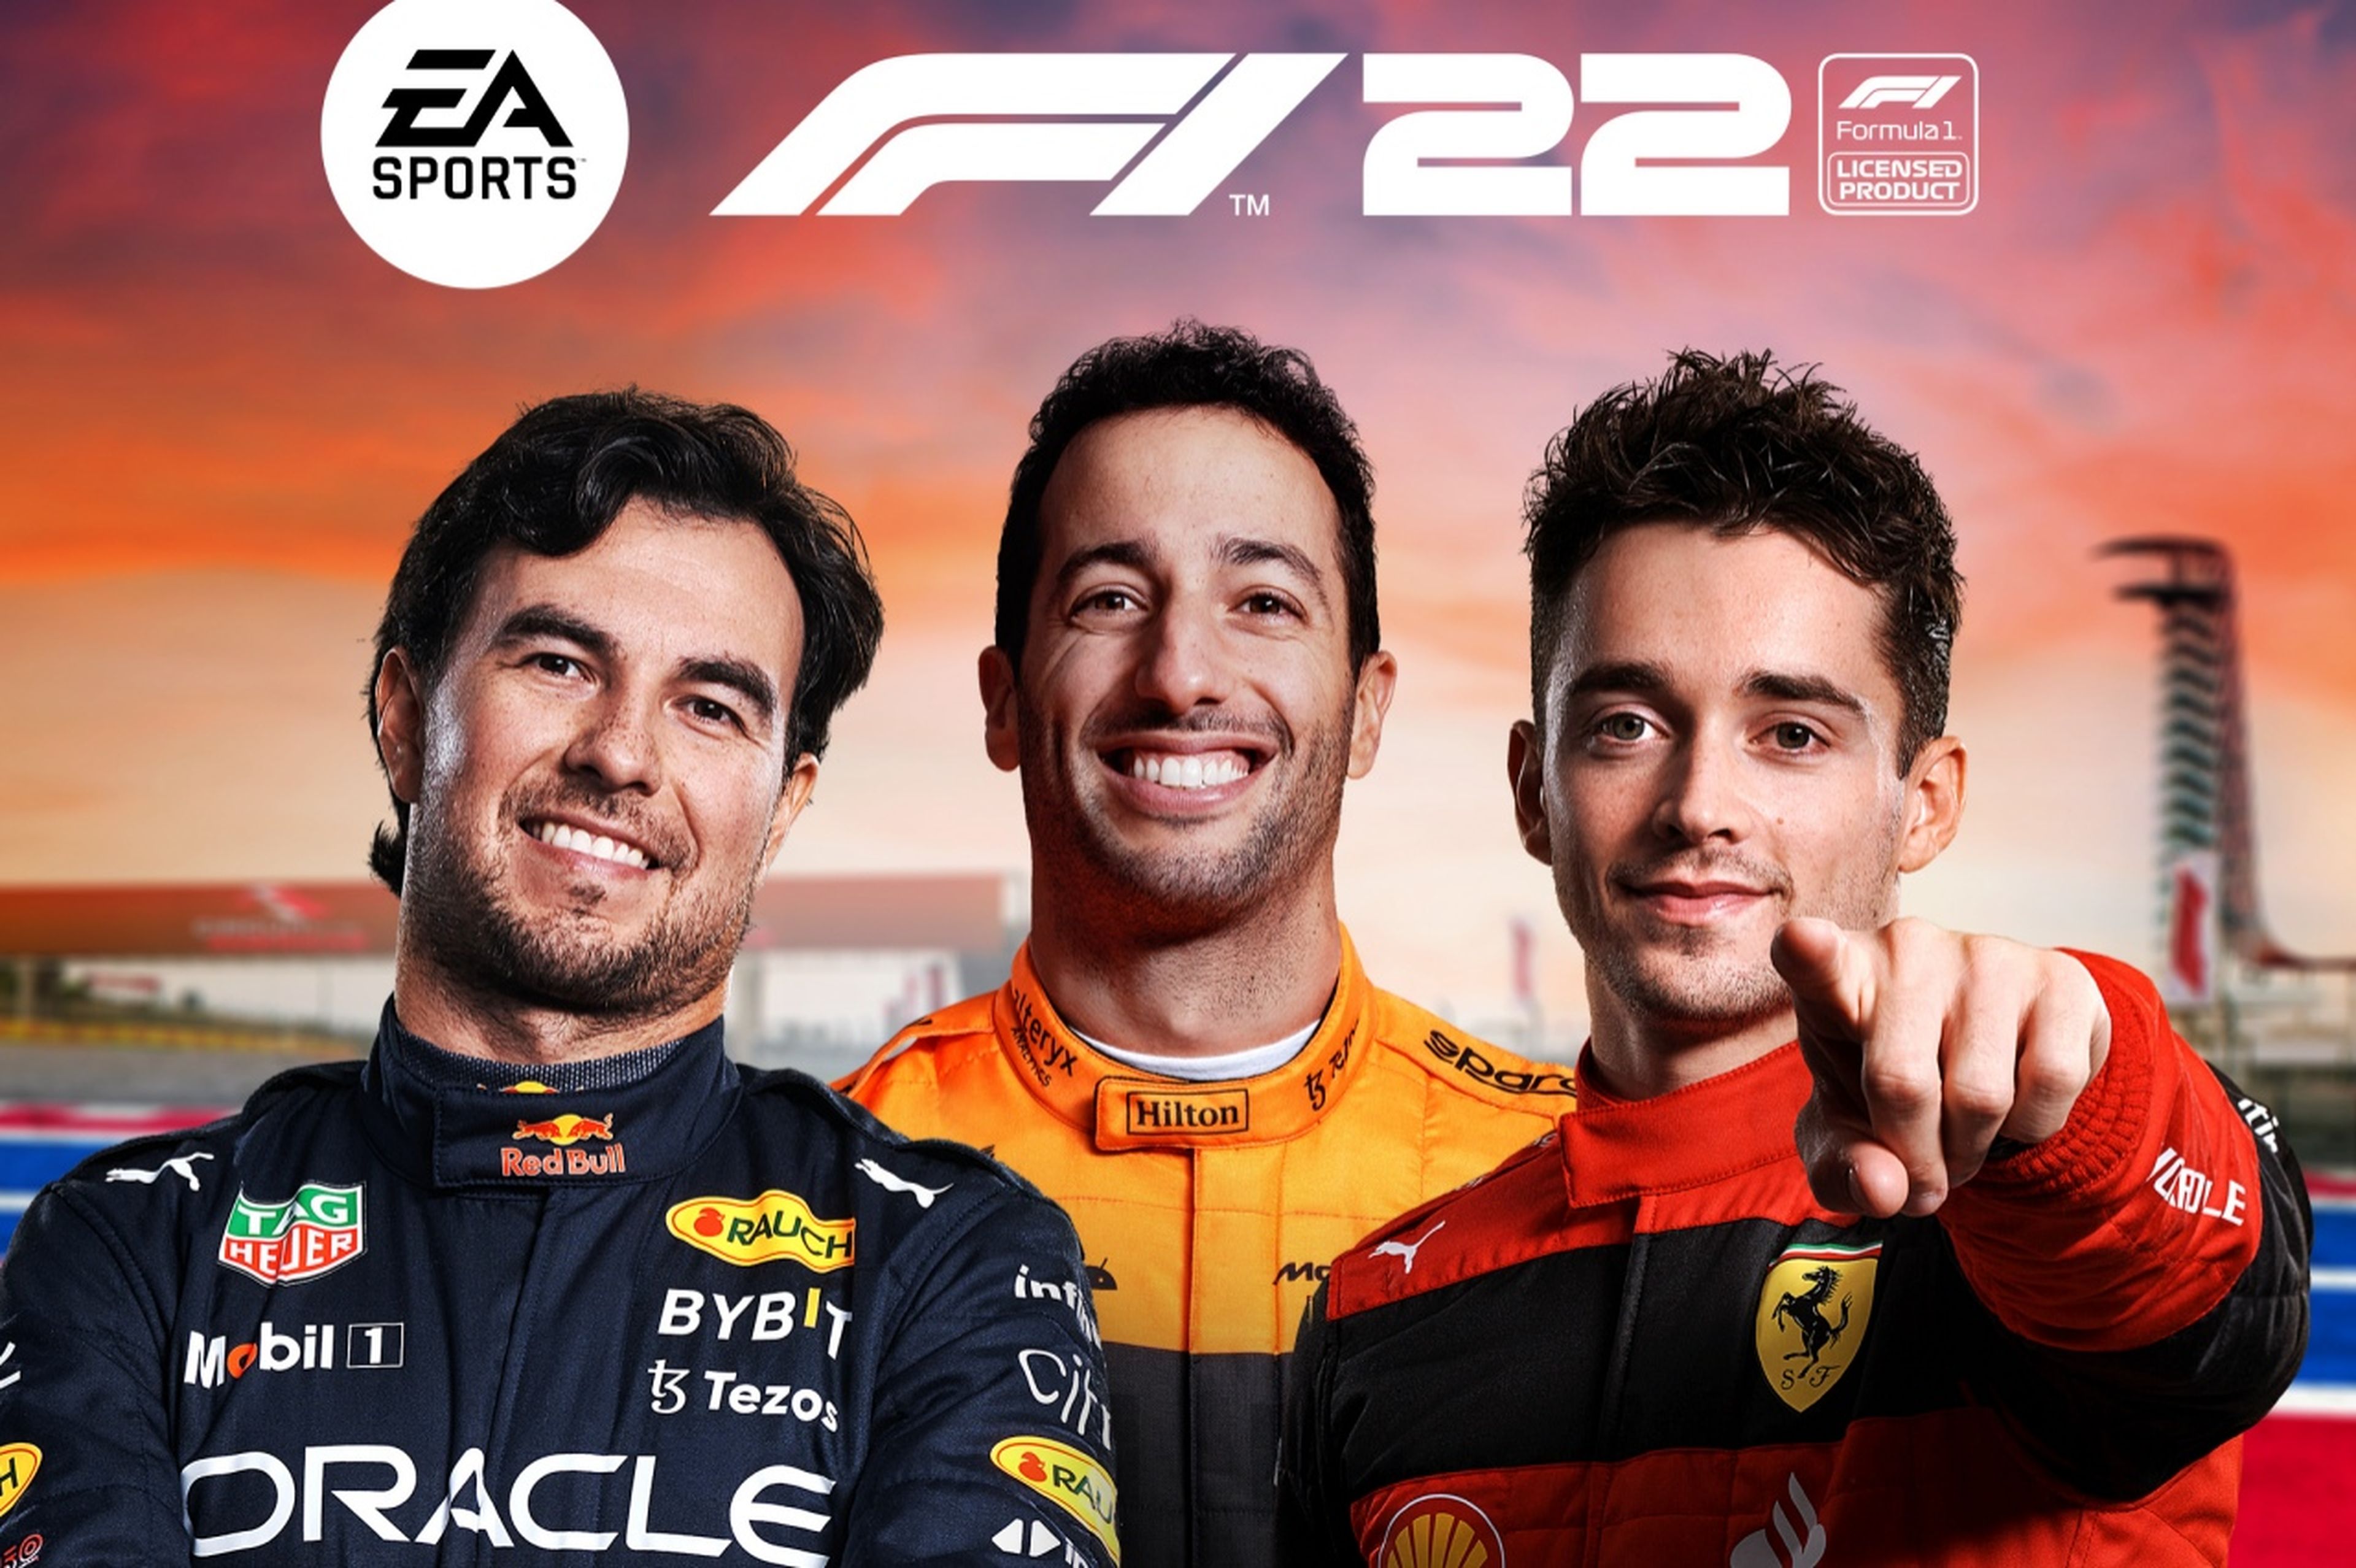 F1 2022 está disponível para teste gratuito neste fim de semana - NerdBunker